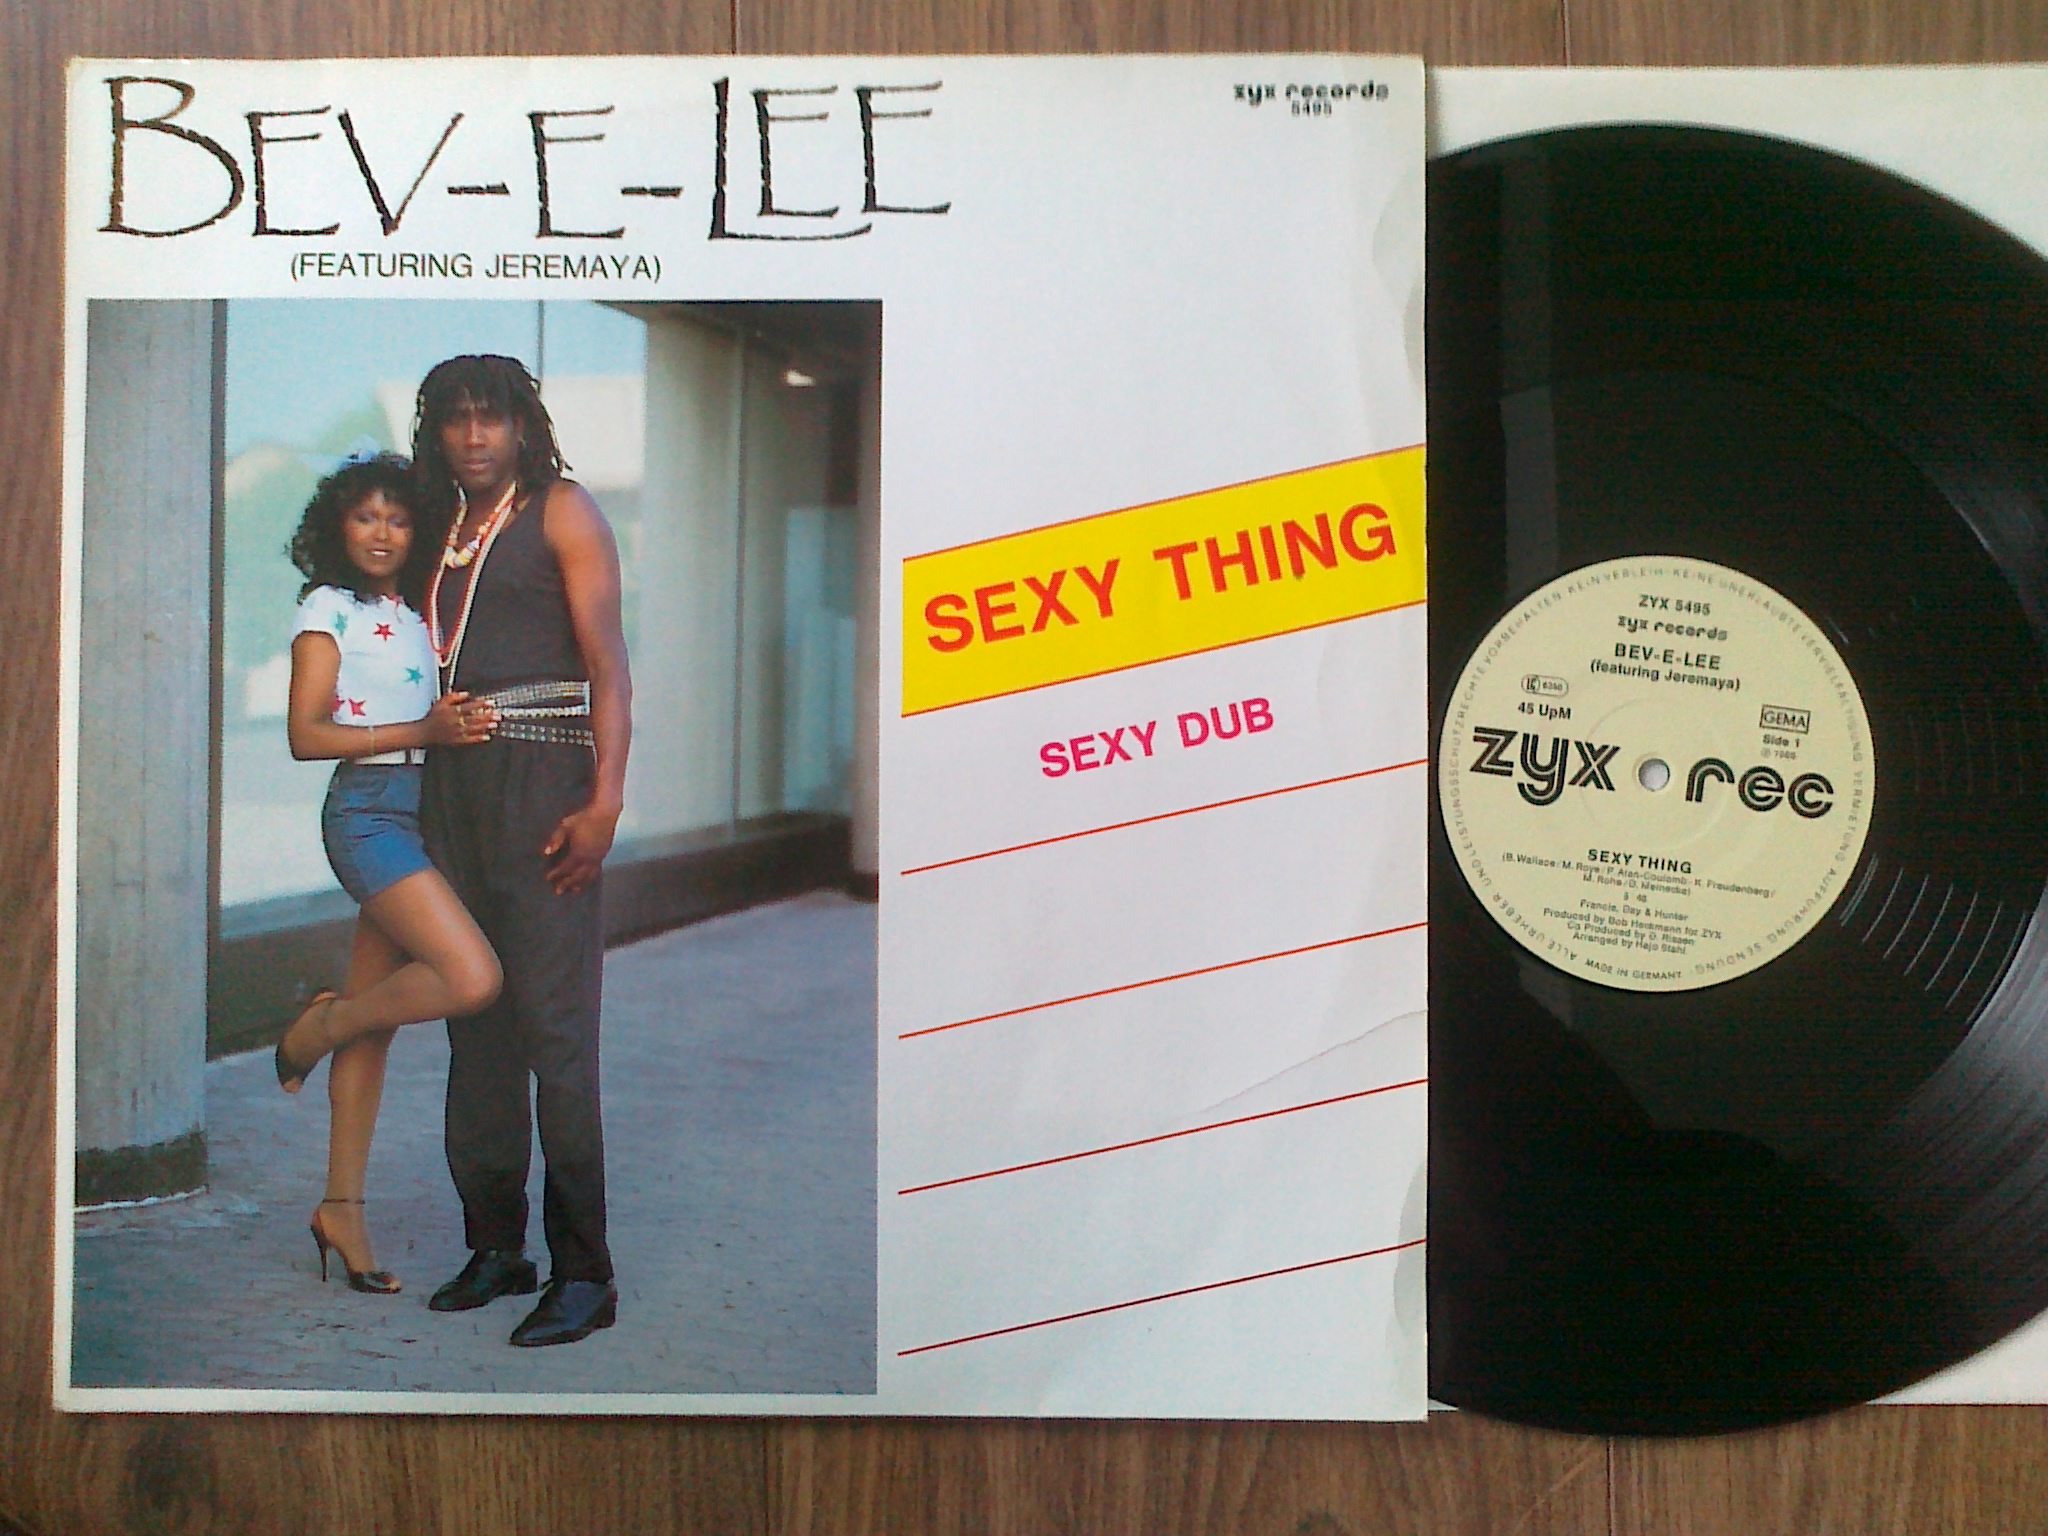 Bev-V-Lee - Sexy Thing